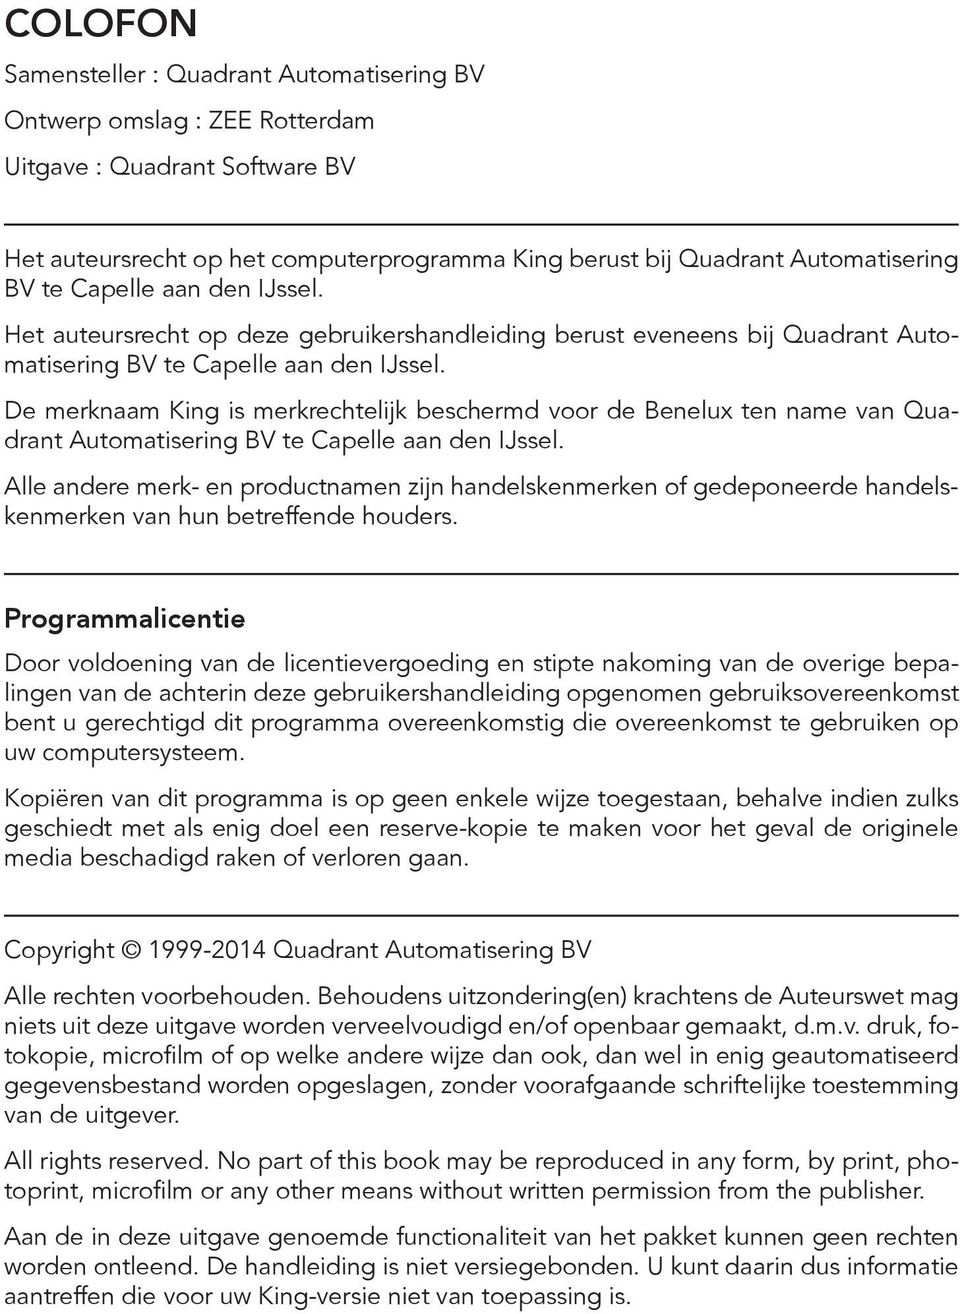 De merknaam King is merkrechtelijk beschermd voor de Benelux ten name van Quadrant Automatisering BV te Capelle aan den IJssel.